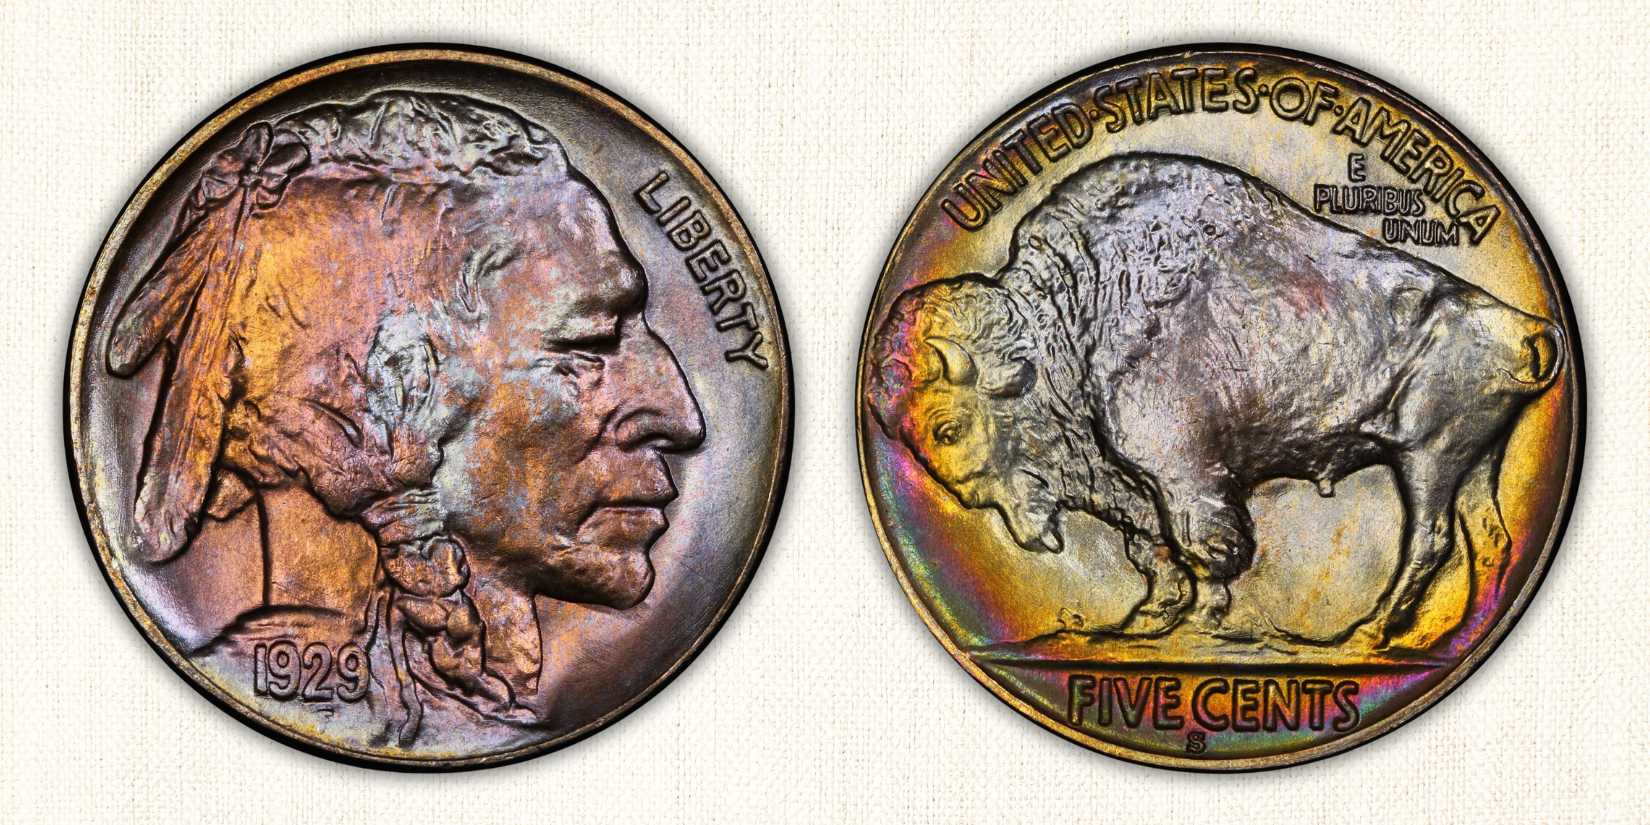 1929-S Nickel Value